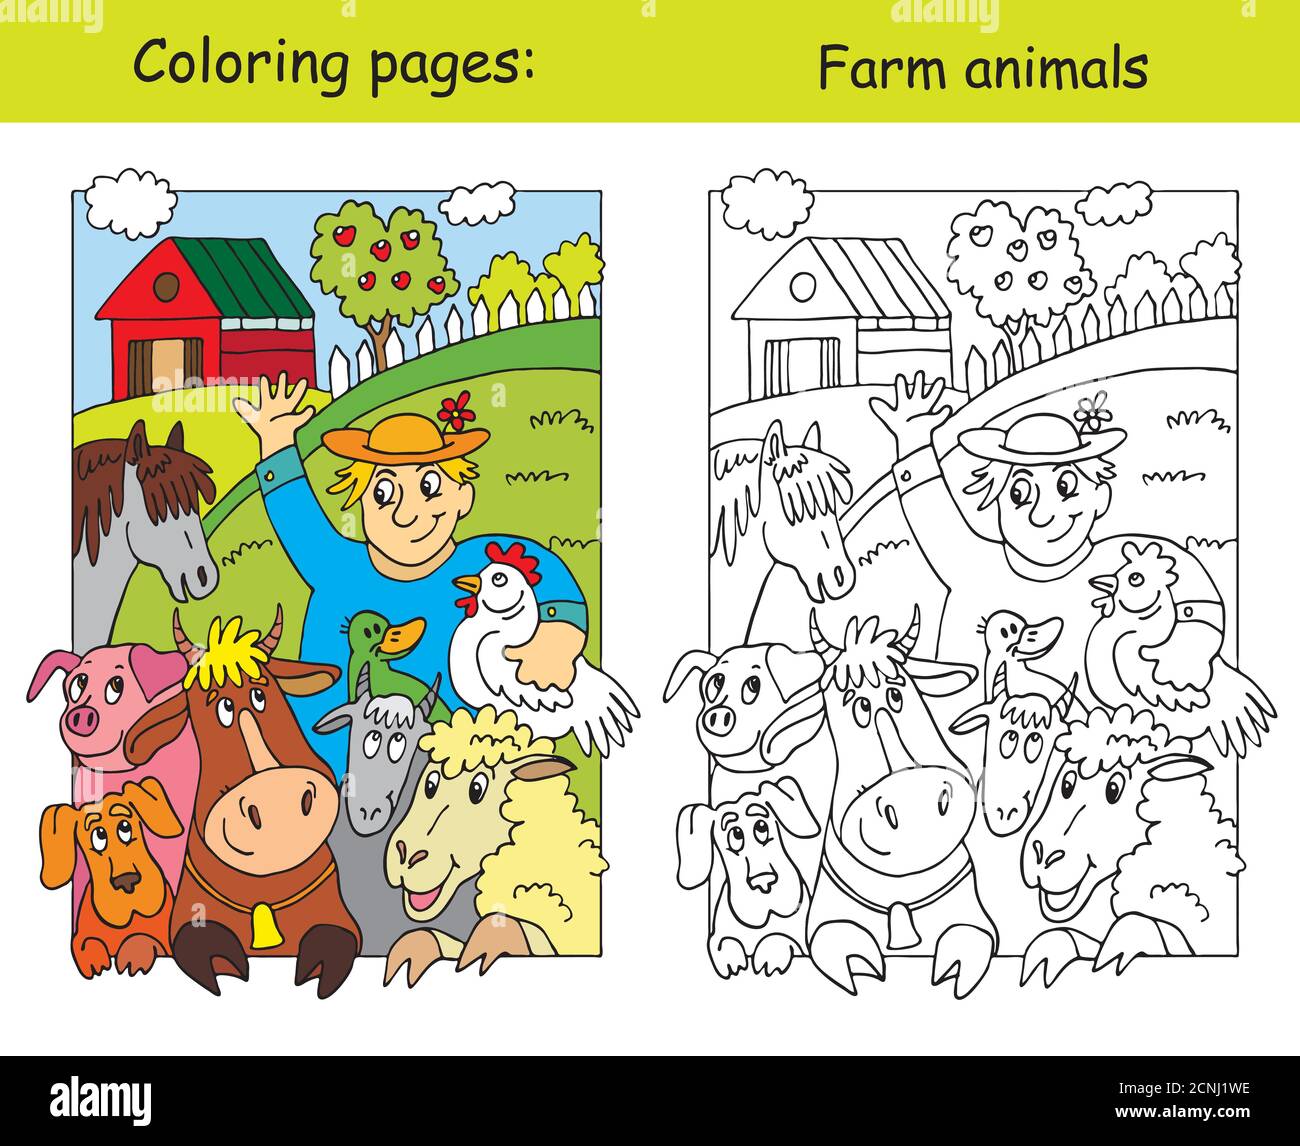 Malvorlagen mit glücklichen Landwirt und seine Nutztiere. Cartoon Vektorgrafik. Сoloring und farbige Bild von Nutztieren. Abbildung für Stock Vektor